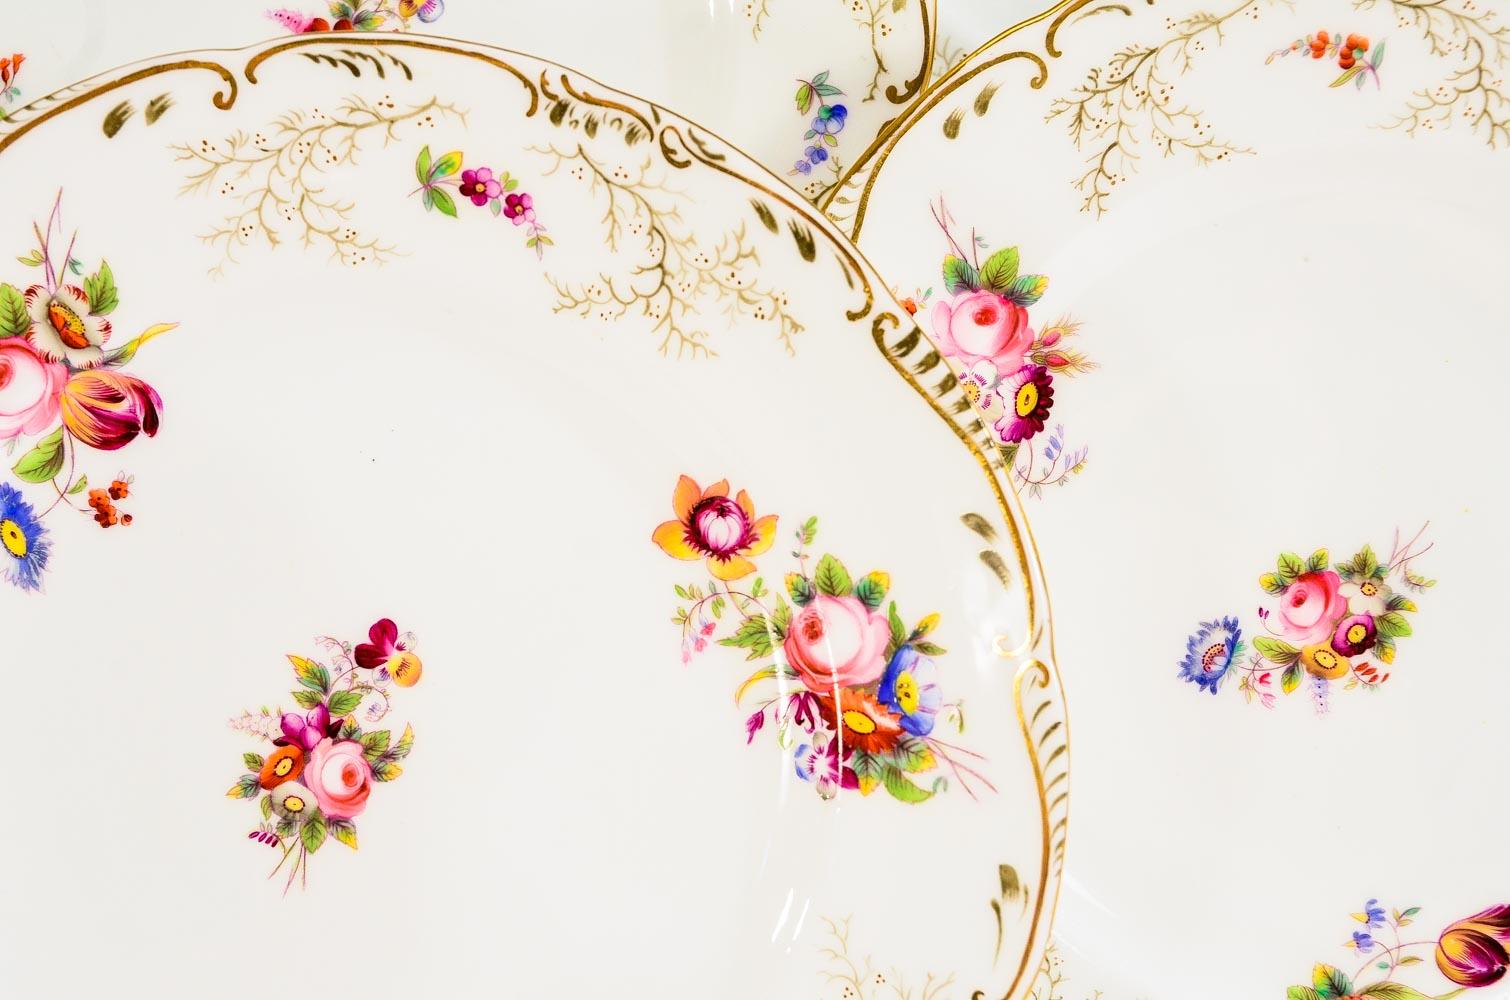 Dieser Satz von 12 handbemalten Cauldon Desserttellern aus dem 19. Jh. zeigt detaillierte Darstellungen von Blumenbouquets in leuchtenden Primärfarben, die sich wunderbar mit vielen Stilen und Farbgebungen kombinieren lassen. Kombinieren Sie diese